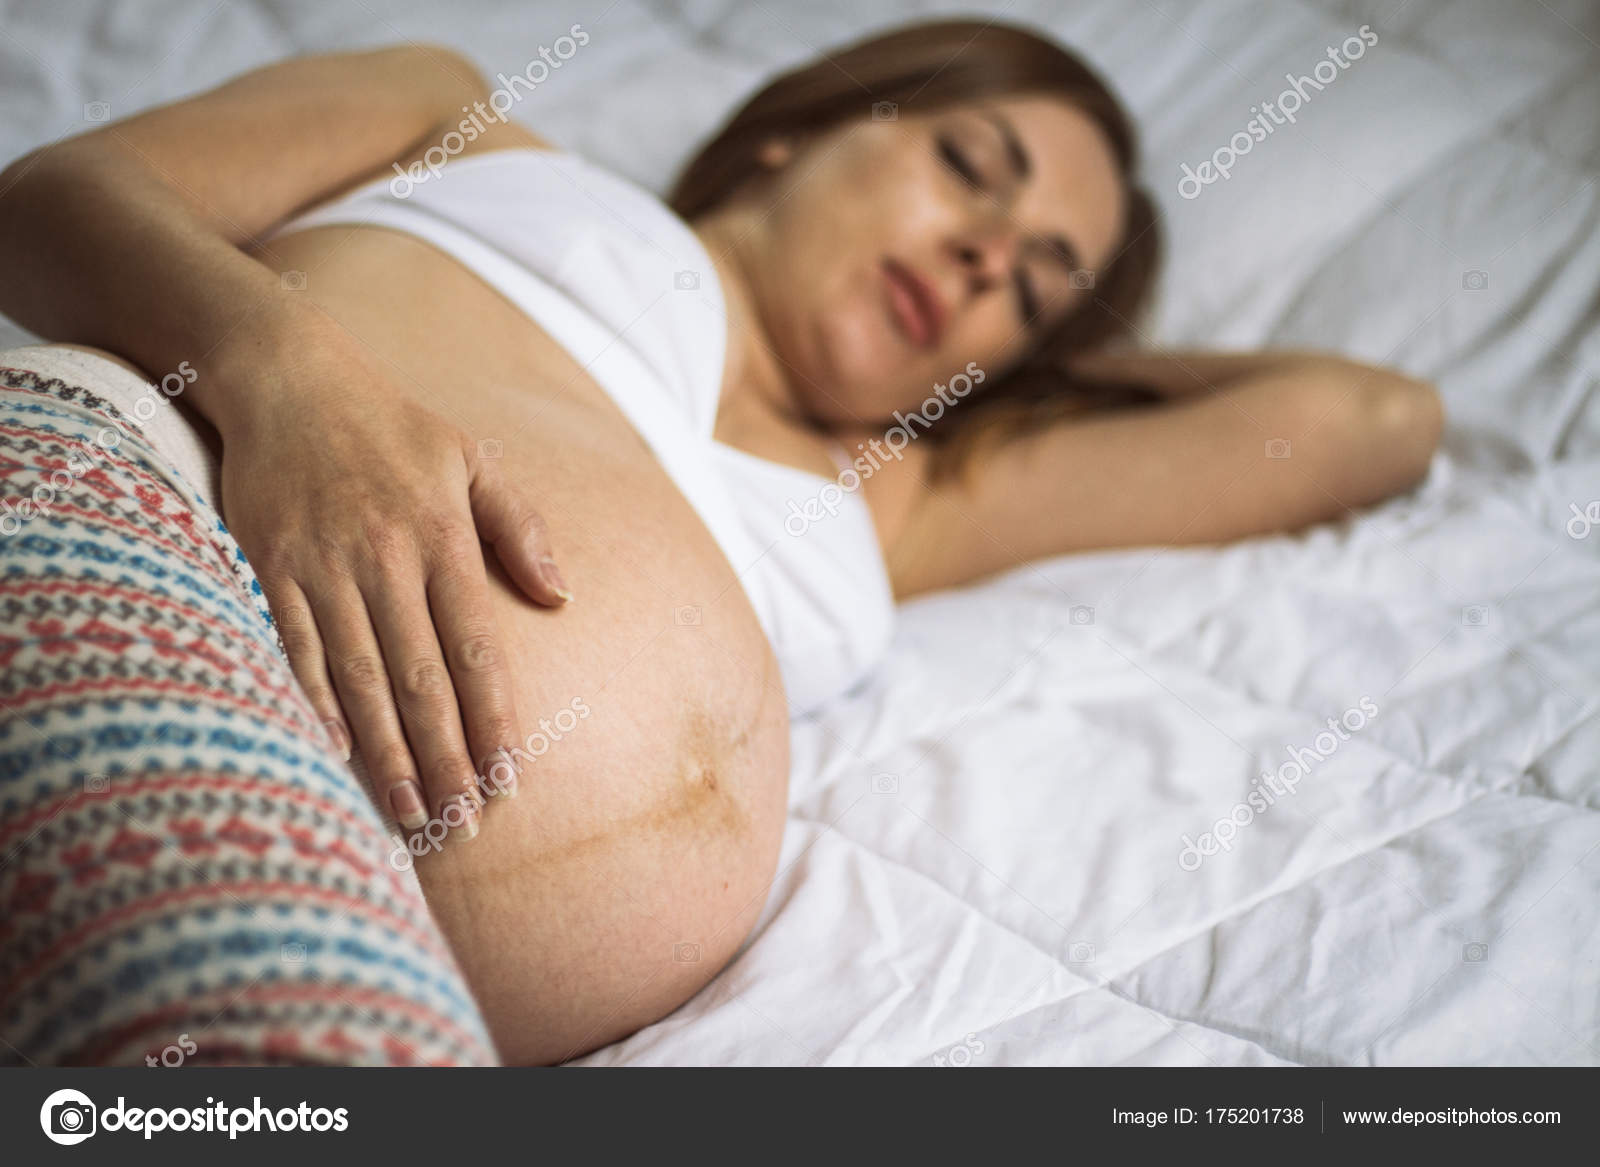 опасен ли при беременности оргазм во сне фото 104